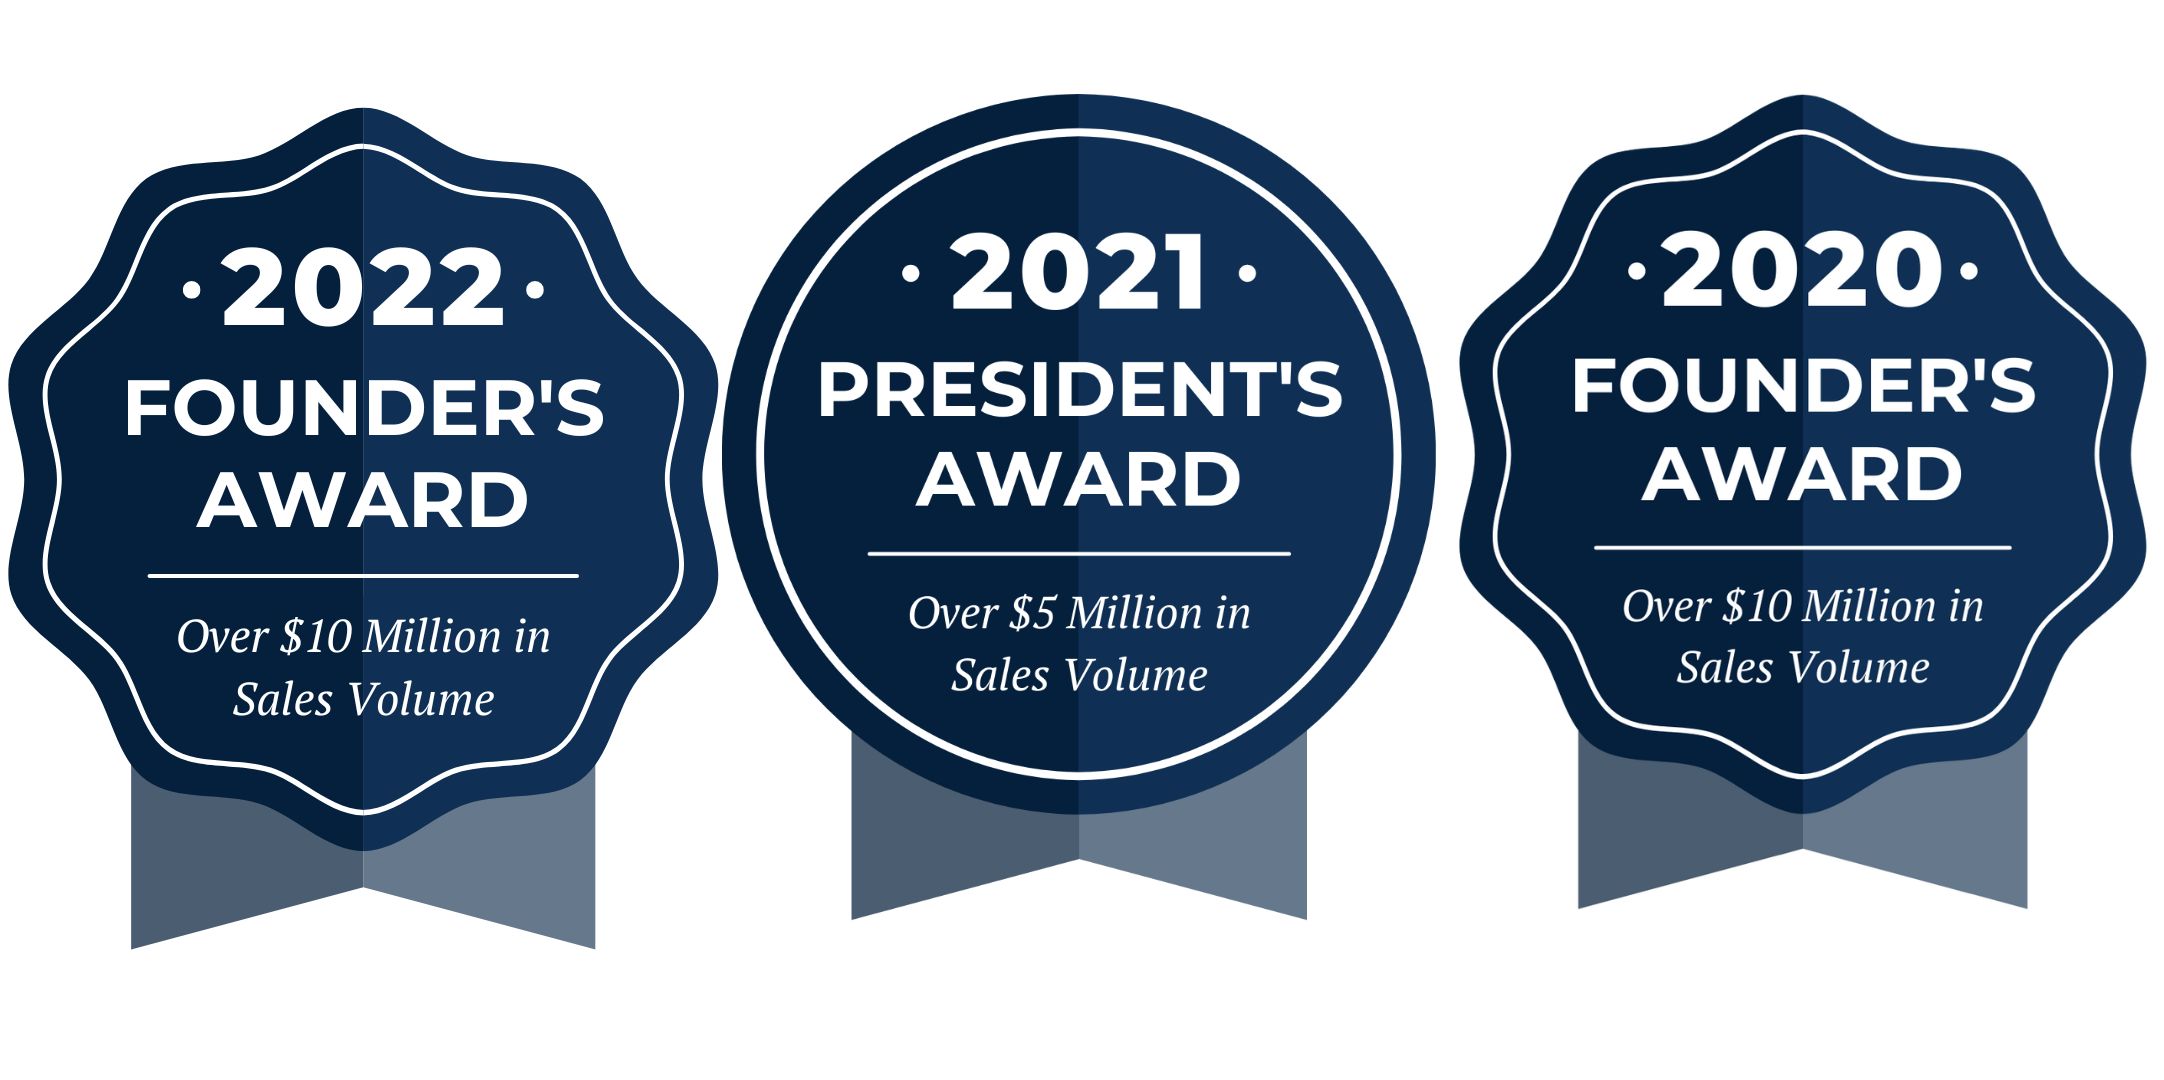 2022 Founder's Award, 2021 President's Award, 2020 Founder's Award